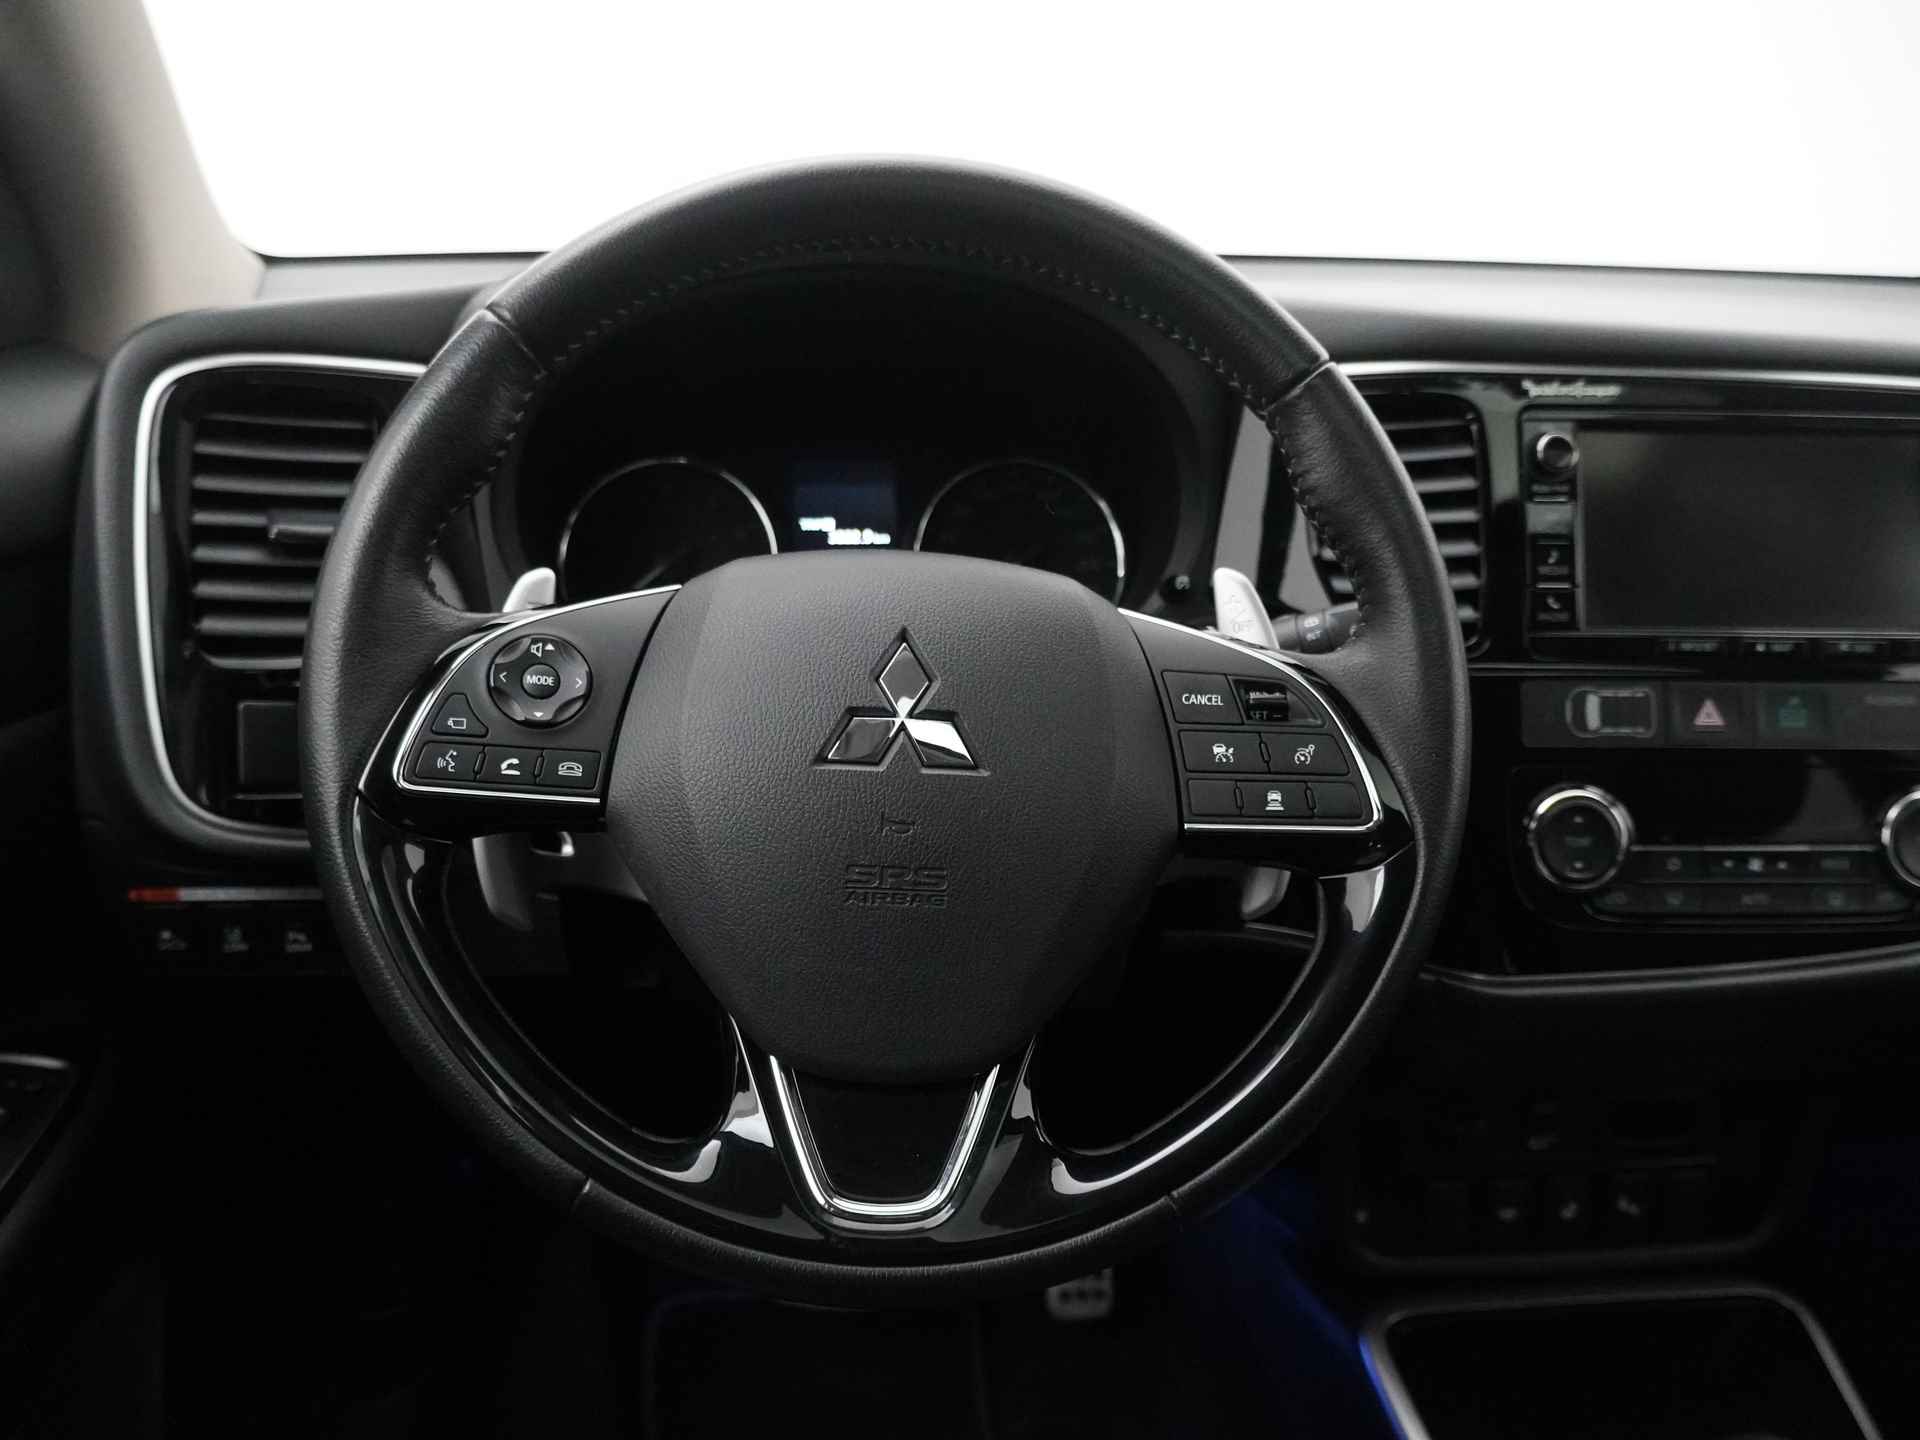 Mitsubishi Outlander 2.0 Instyle+ 4WD - Schuifkanteldak - Lederen bekleding - Voorraam verwarming - Apple CarPlay / Android Auto - Elektrische achterklep - 12 Maanden bovag garantie - 39/48